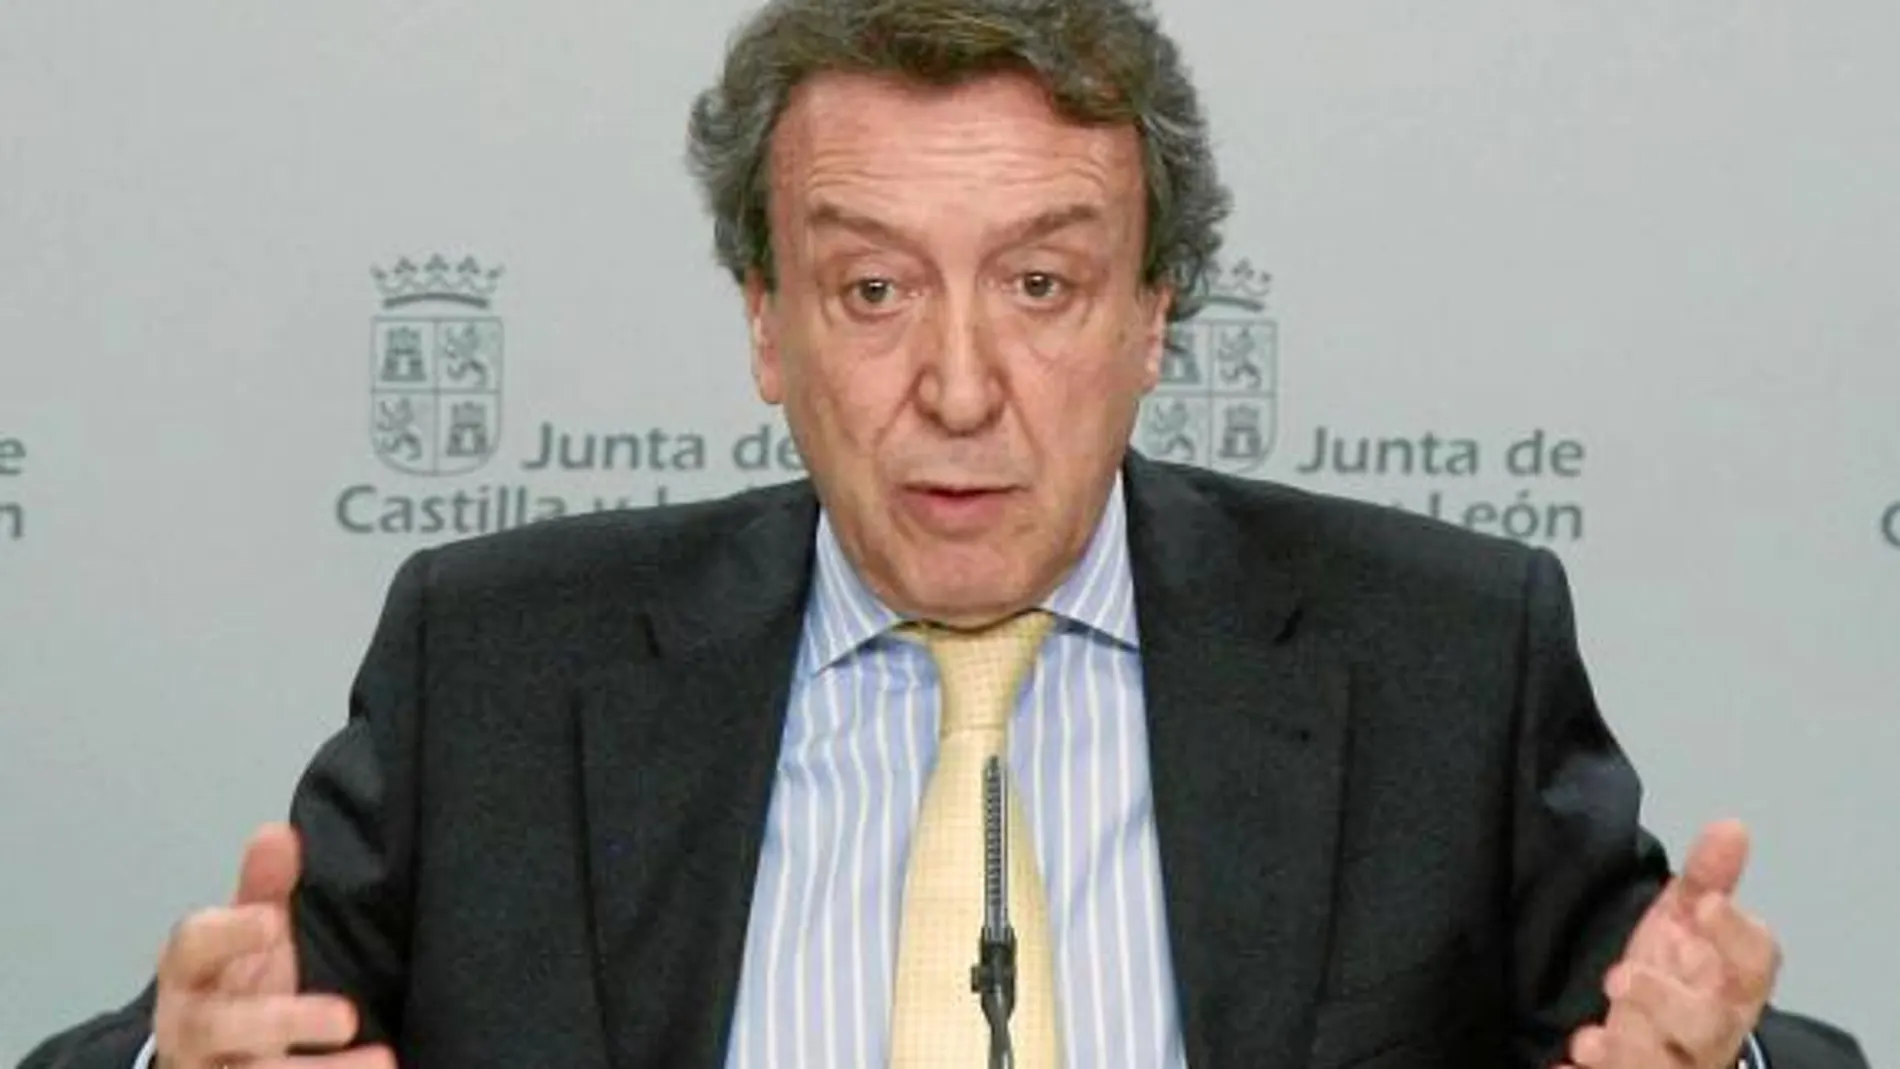 El portavoz, José Antonio de Santiago-Juárez, no entiende la actitud del Gobierno socialista con Castilla y León